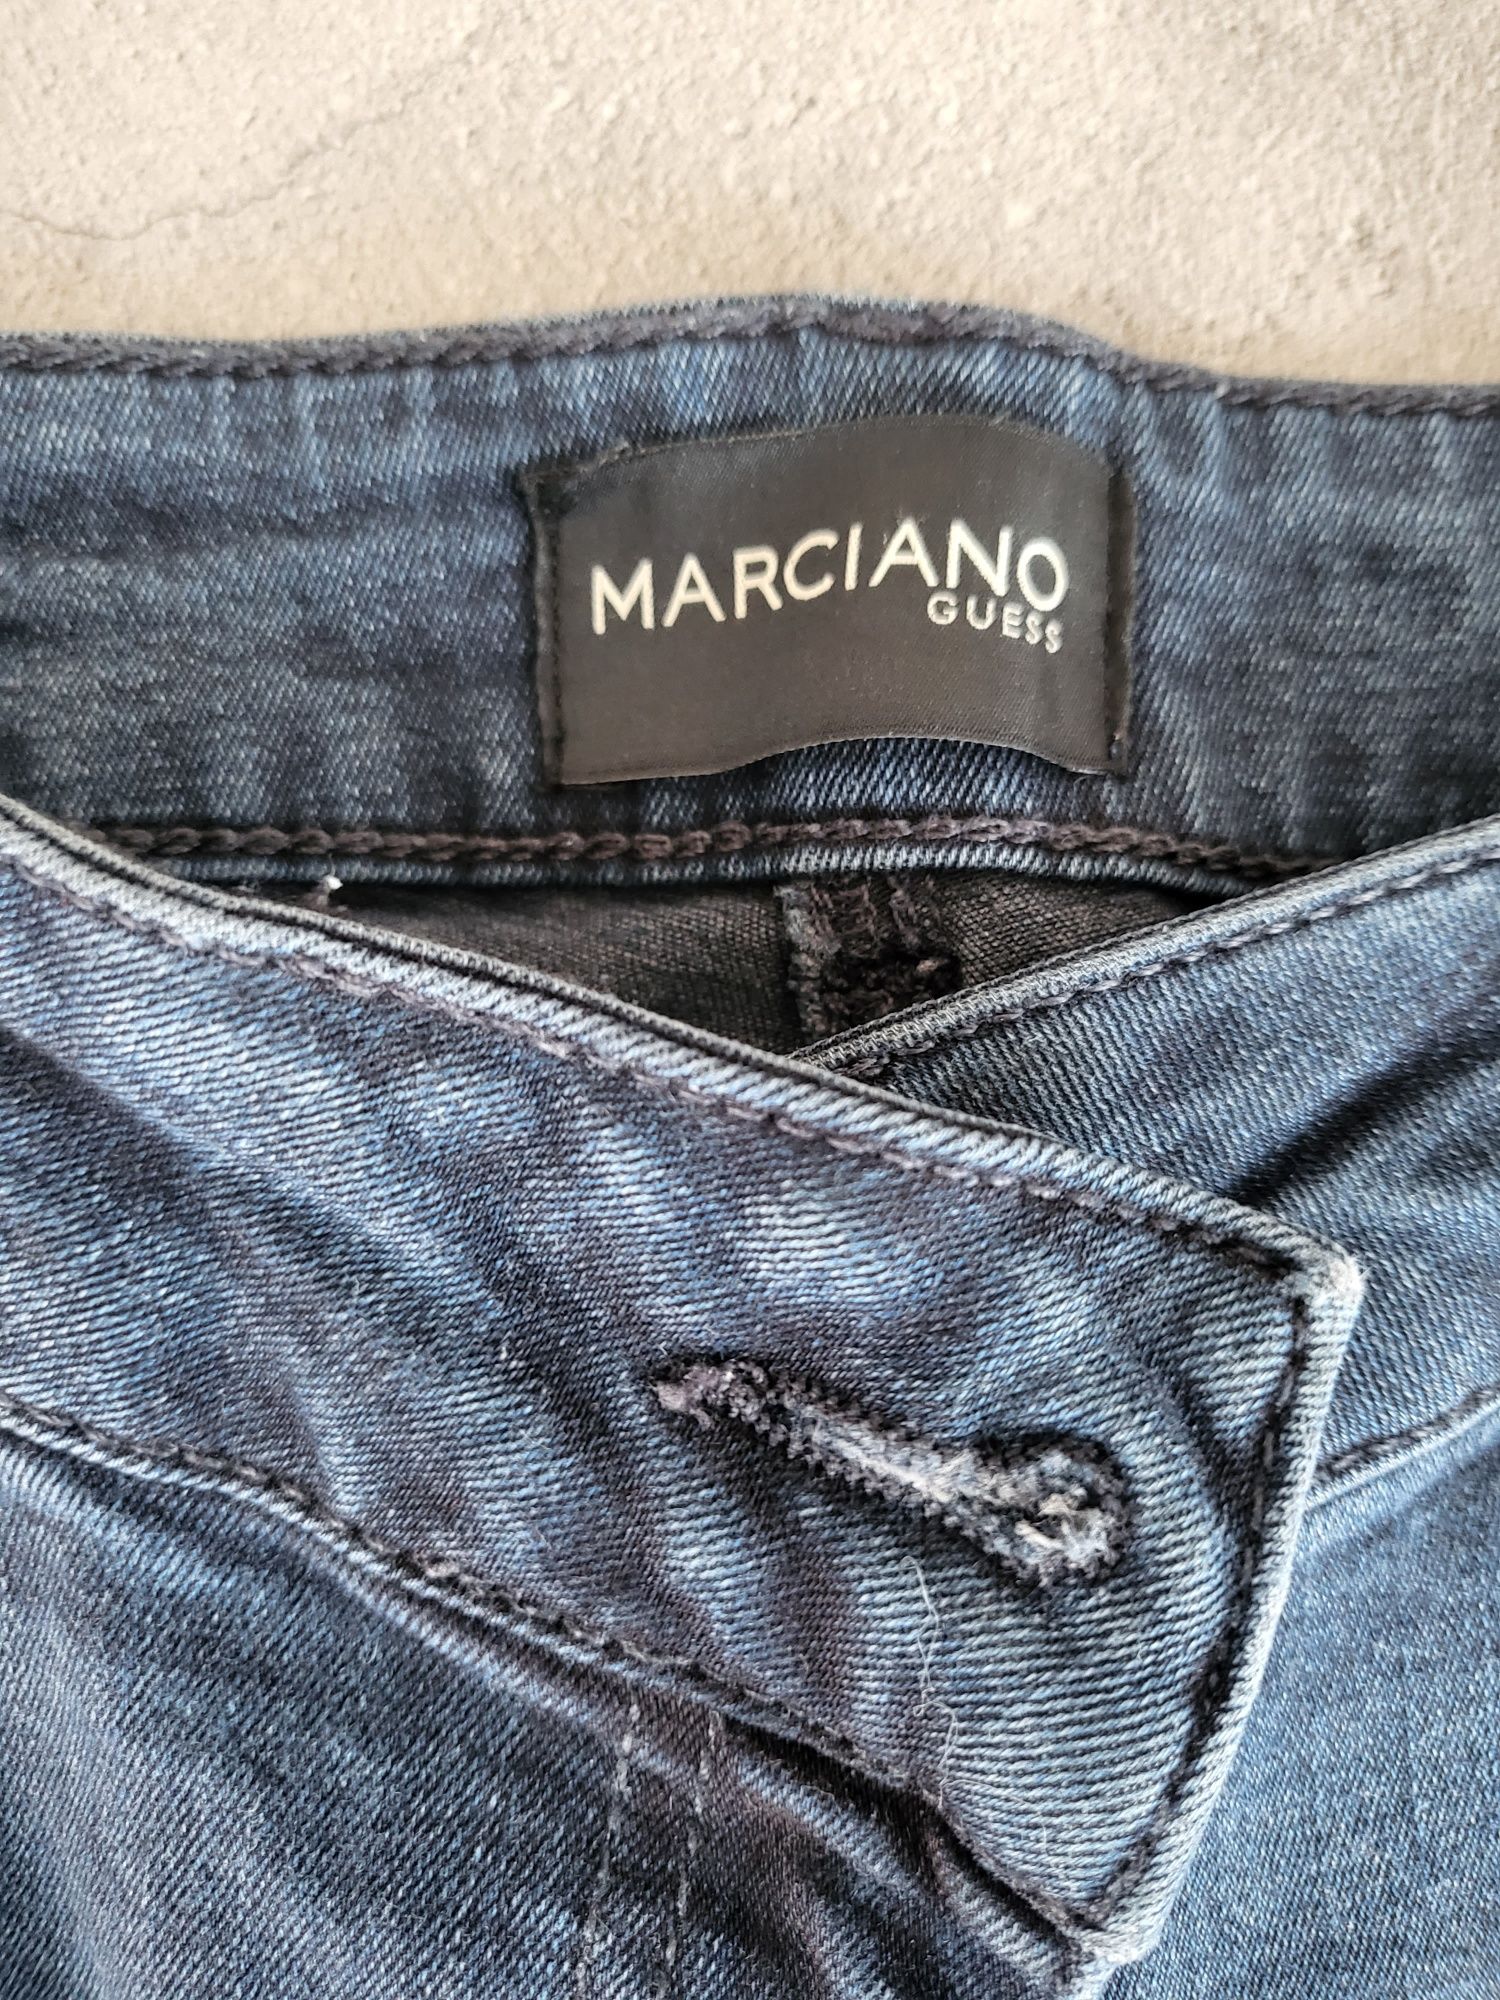 Guess kolekcja Marciano spodnie damskie jeansowe rozmiar 31 stan bdb